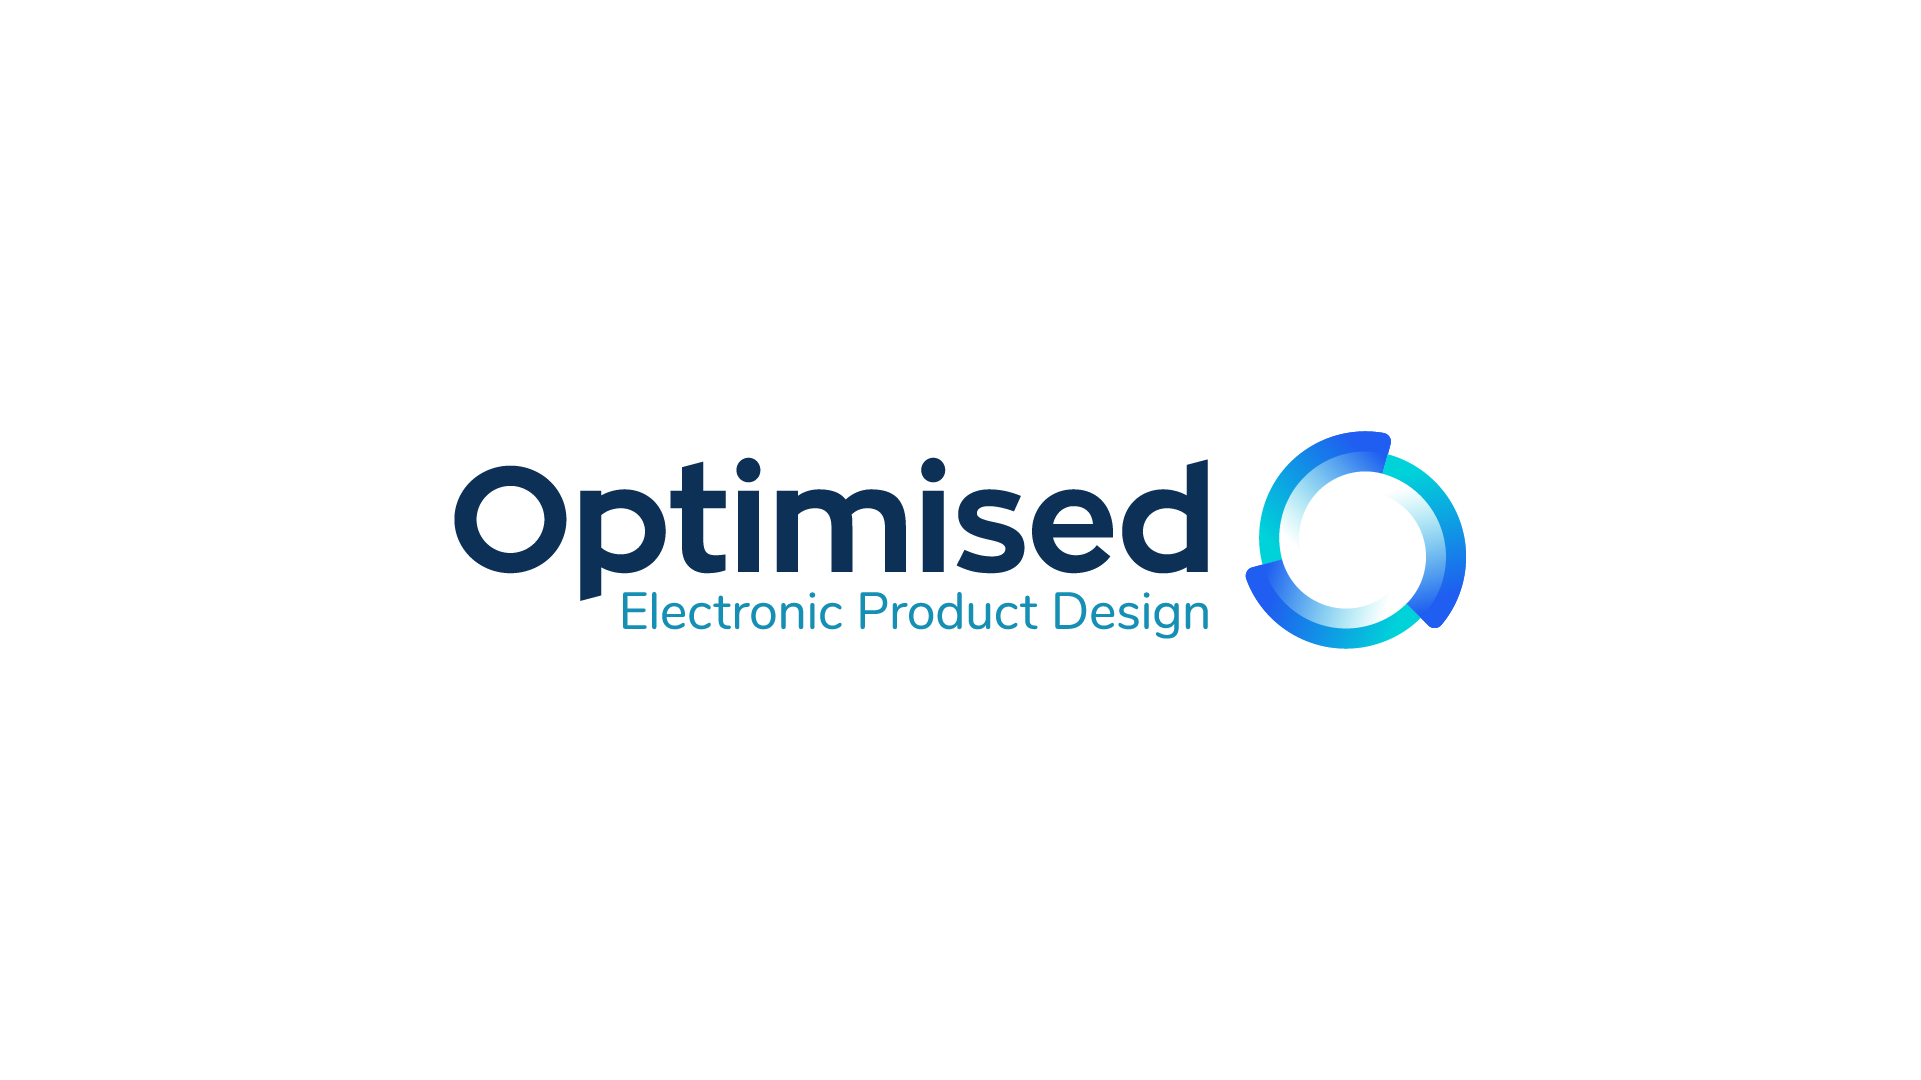 Optimised - Electronic Product Design Company logo, creative circle letter 'O,' symbolizing innovation and optimization in electronic product design